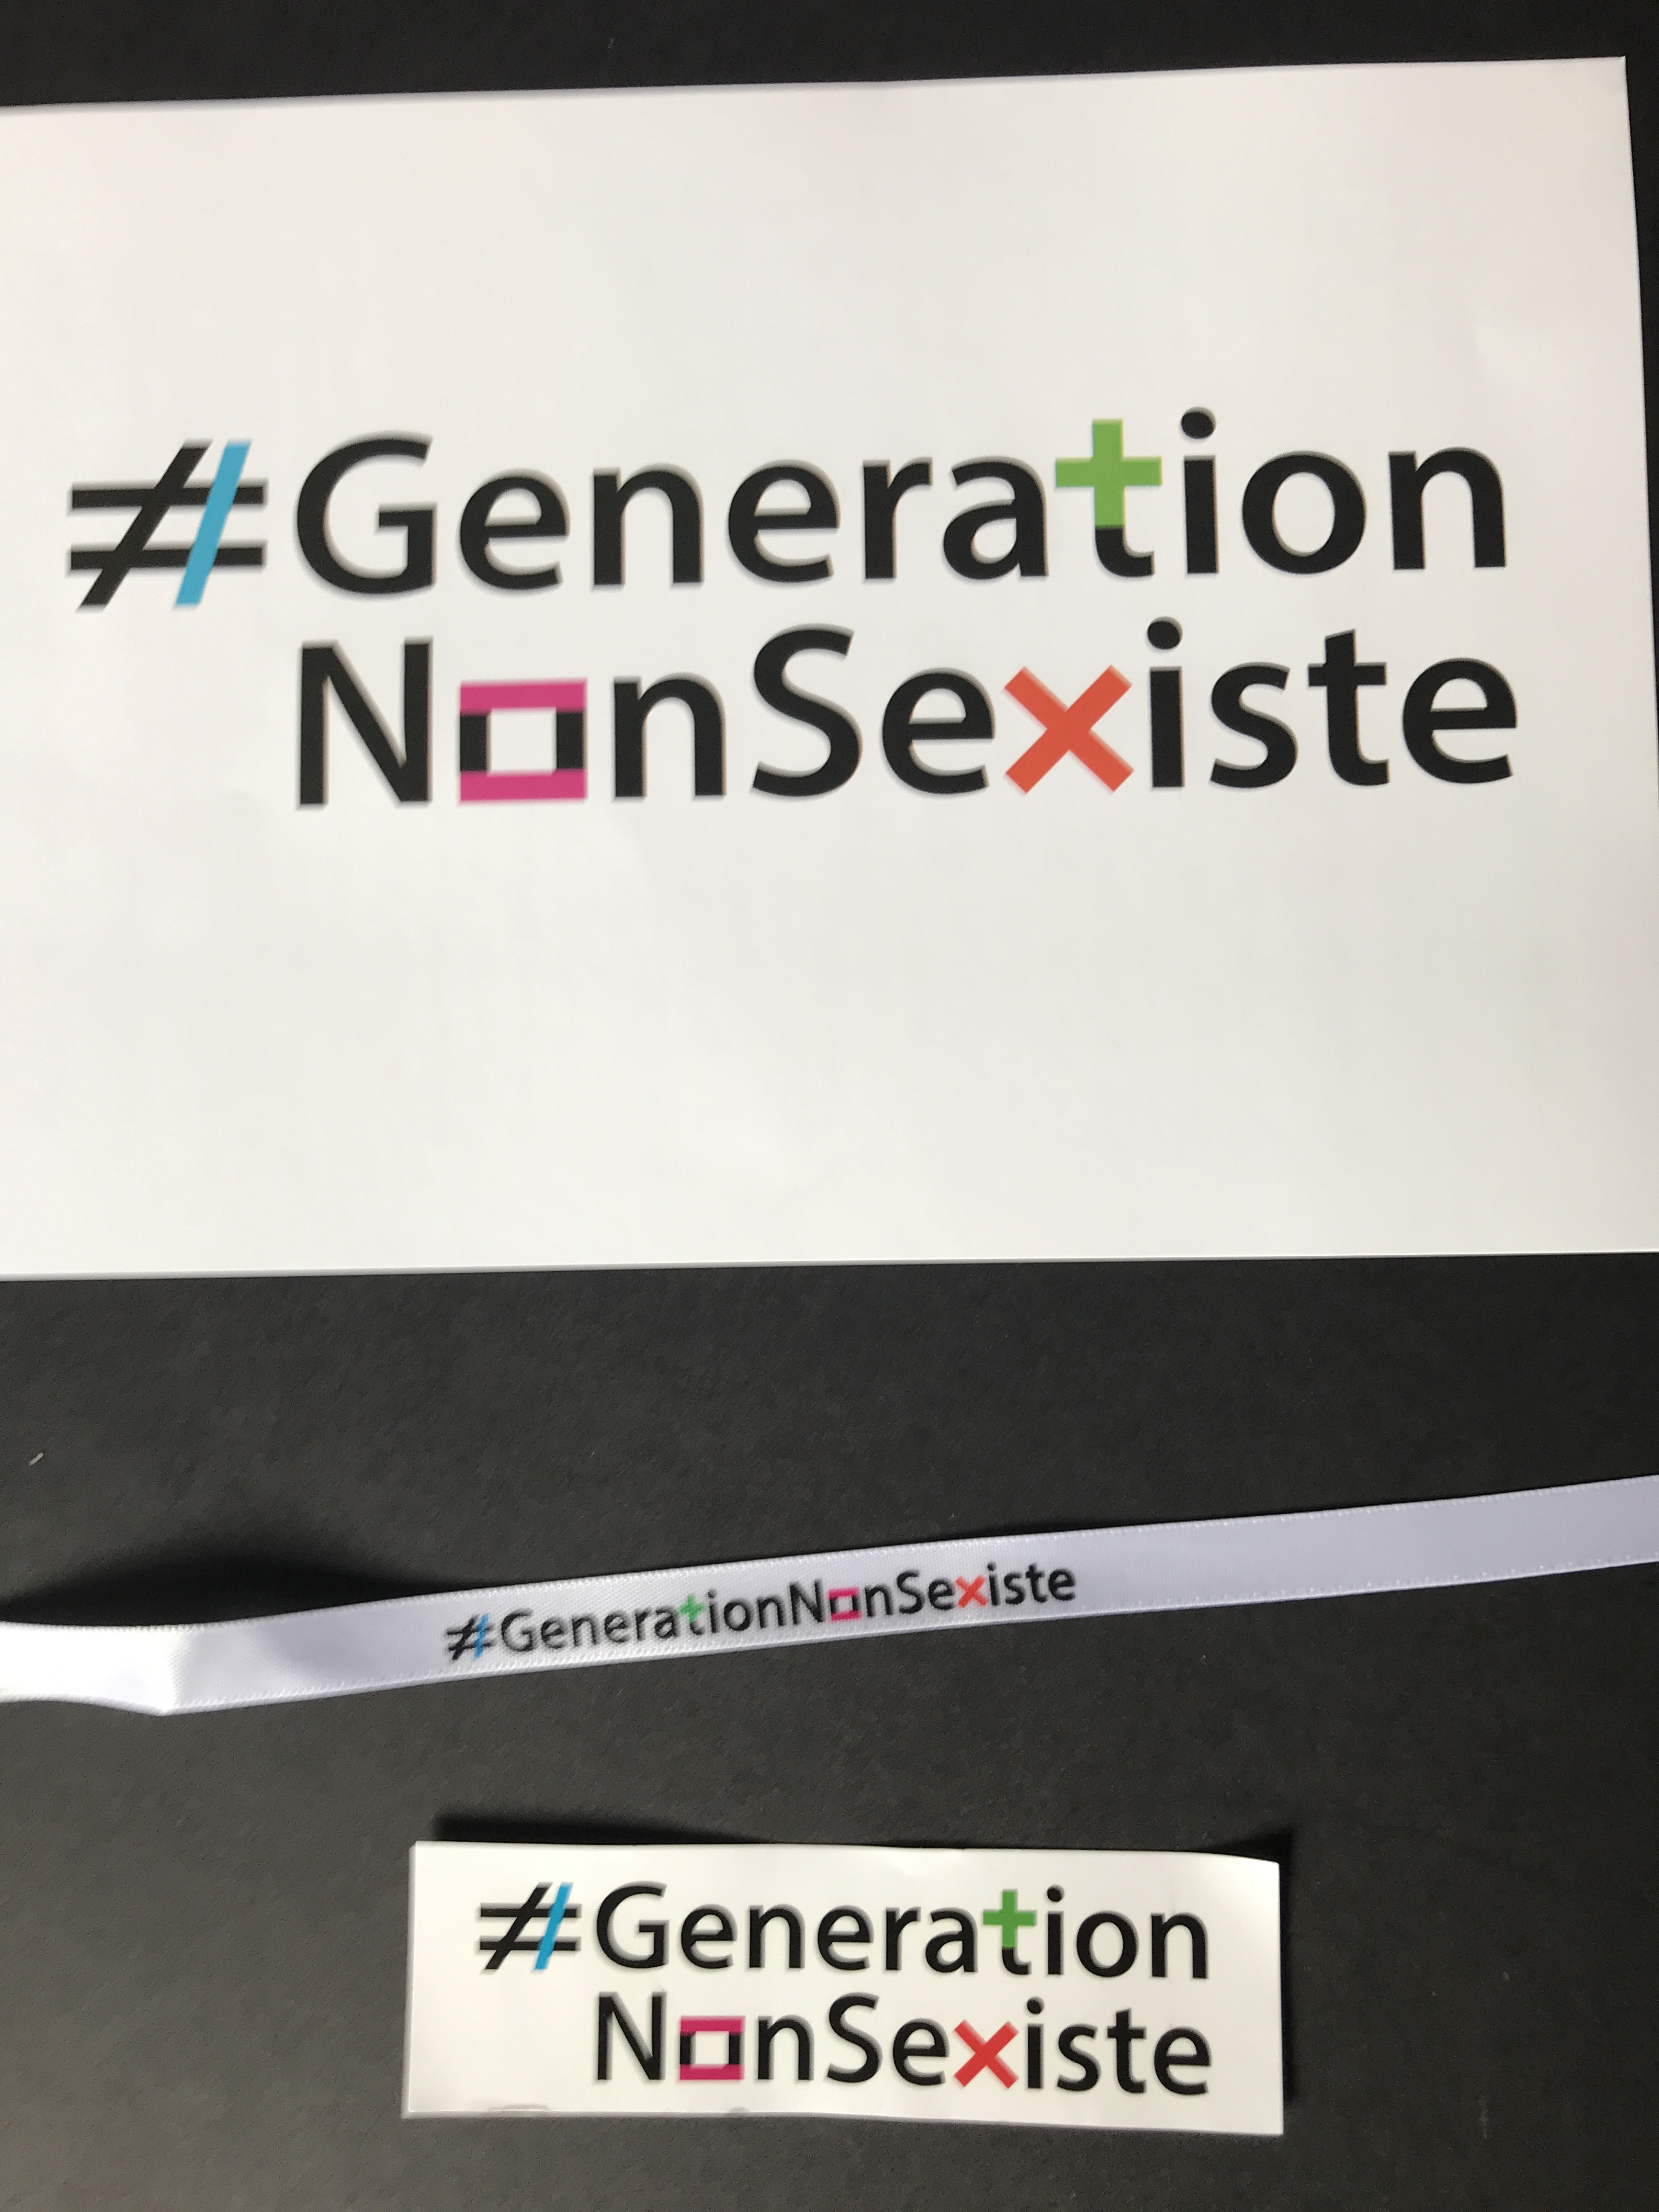 Femmes solidaires : lancement de la campagne .#GenerationNonSexiste .